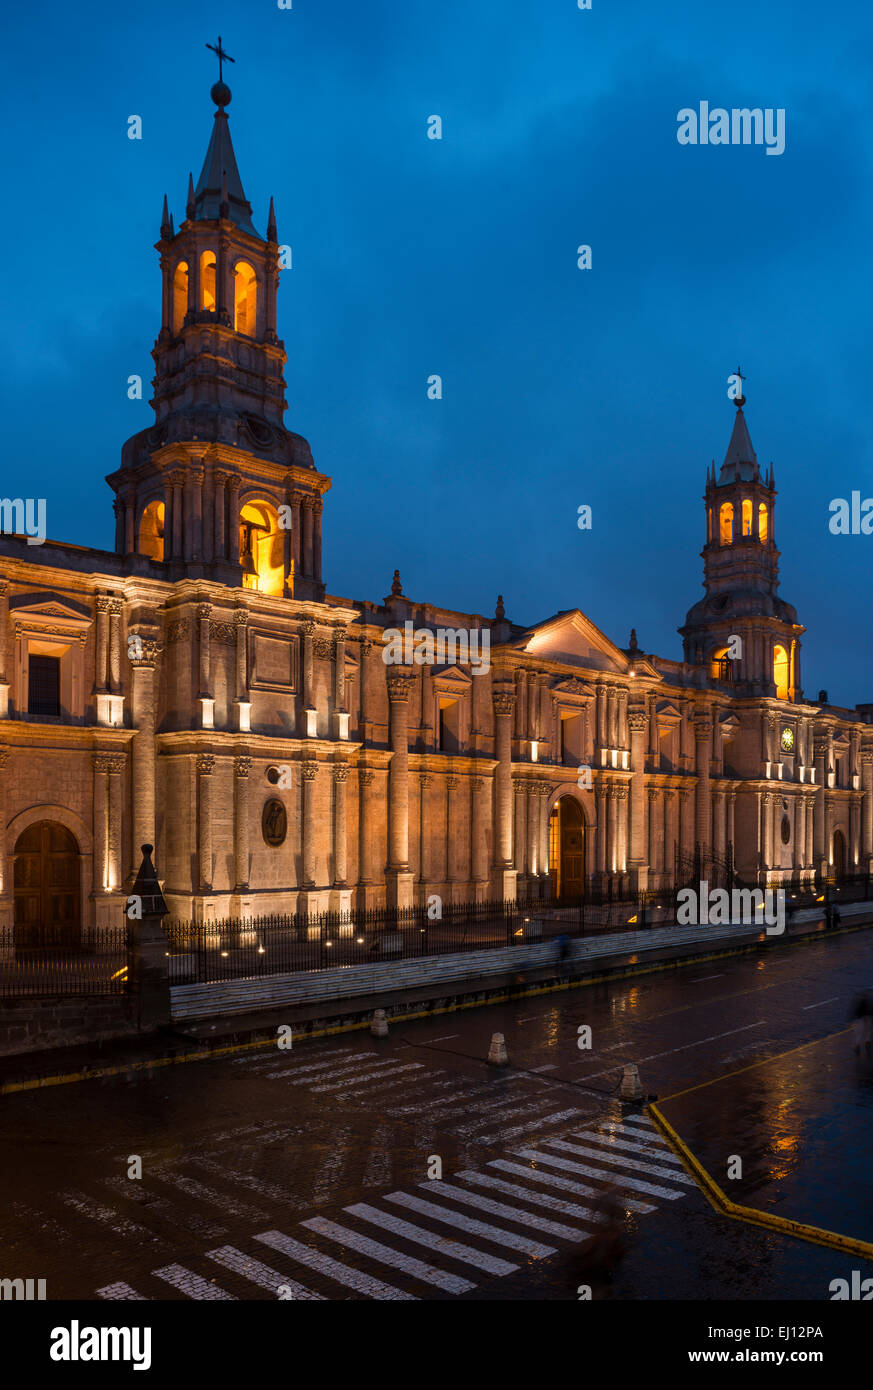 La Catedral at night, Plaza de Armas, Arequipa, Peru Stock Photo